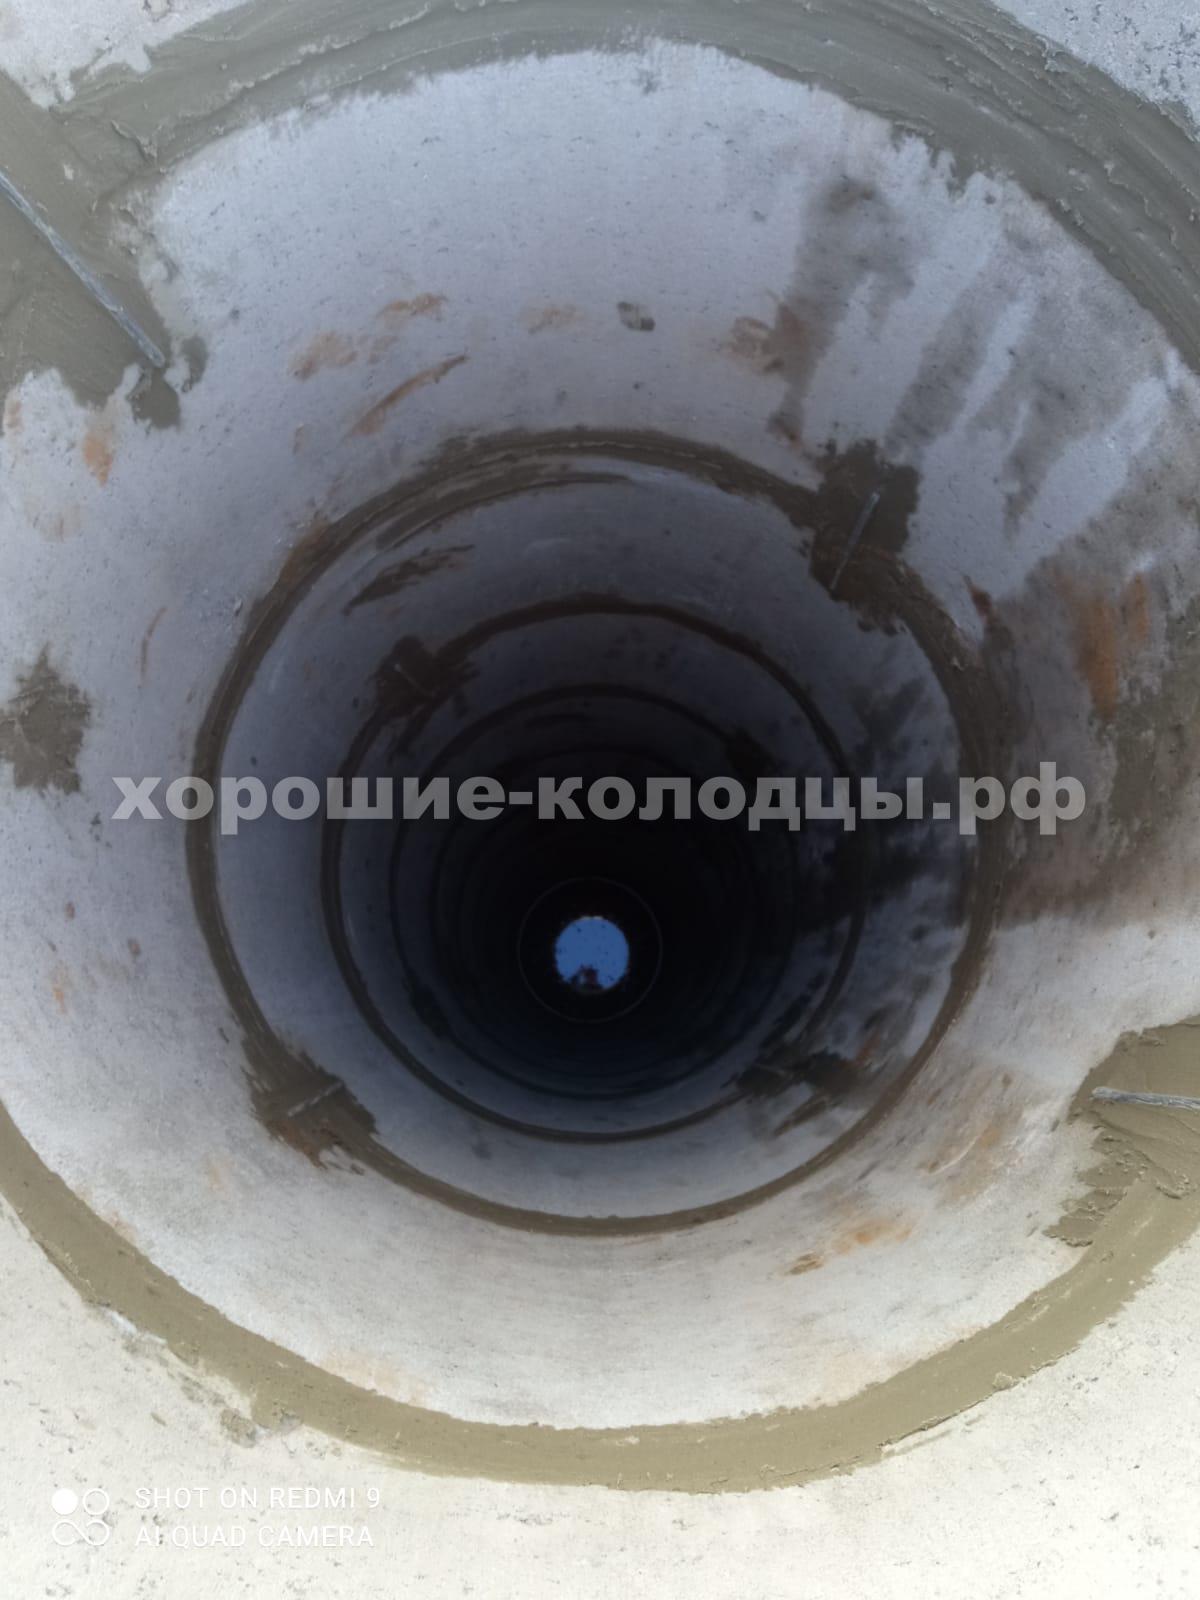 Колодец на воду 13 колец в СНТ Малиновка, Истринский р-н, Подмосковье.